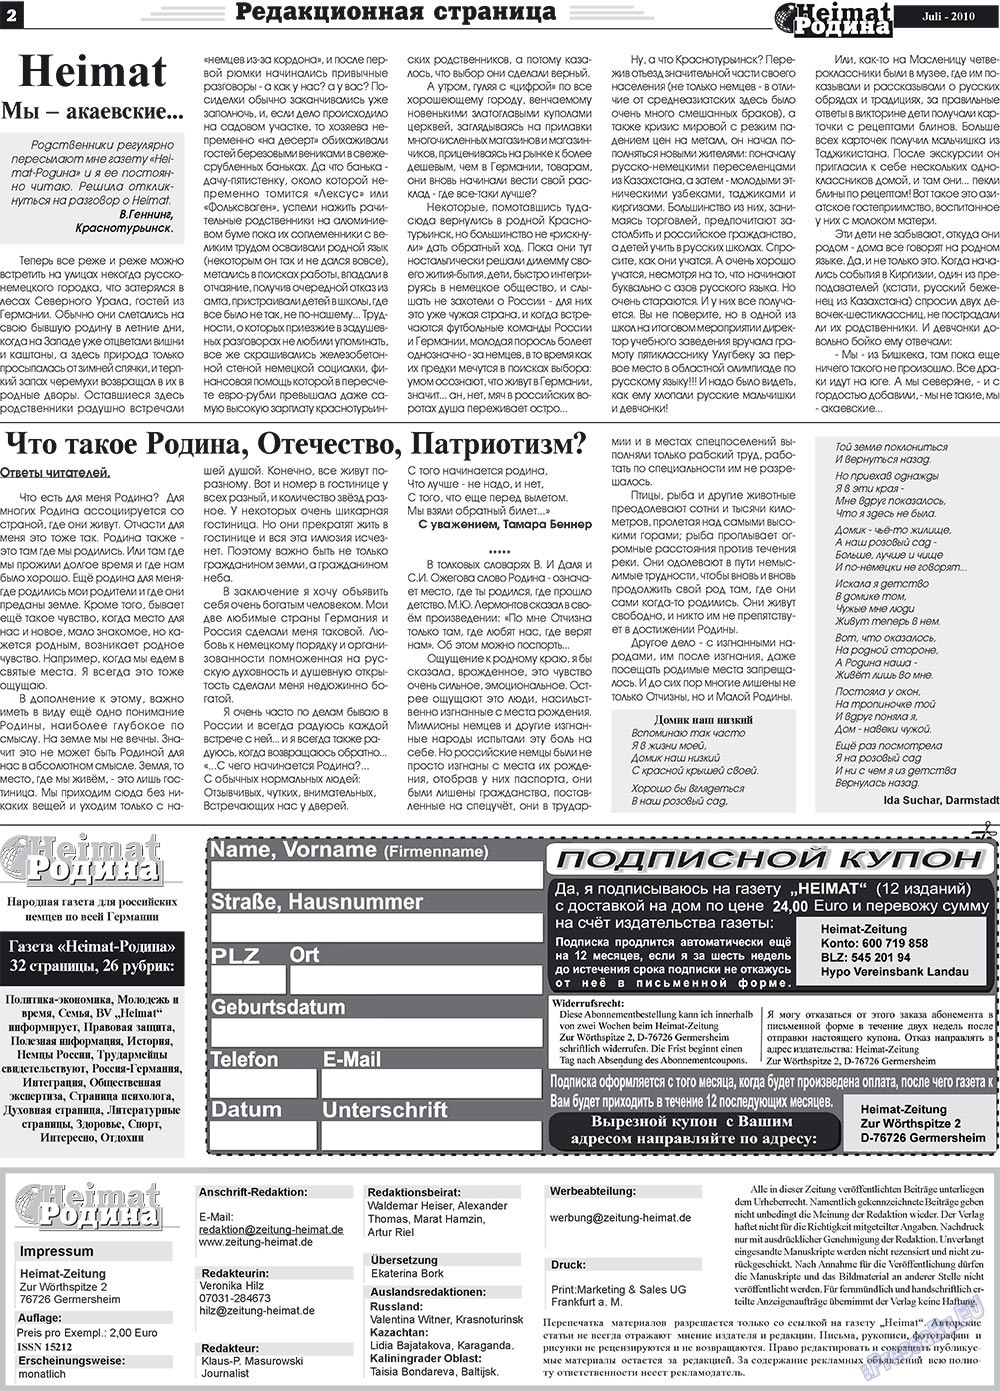 Heimat-Родина (газета). 2010 год, номер 7, стр. 2